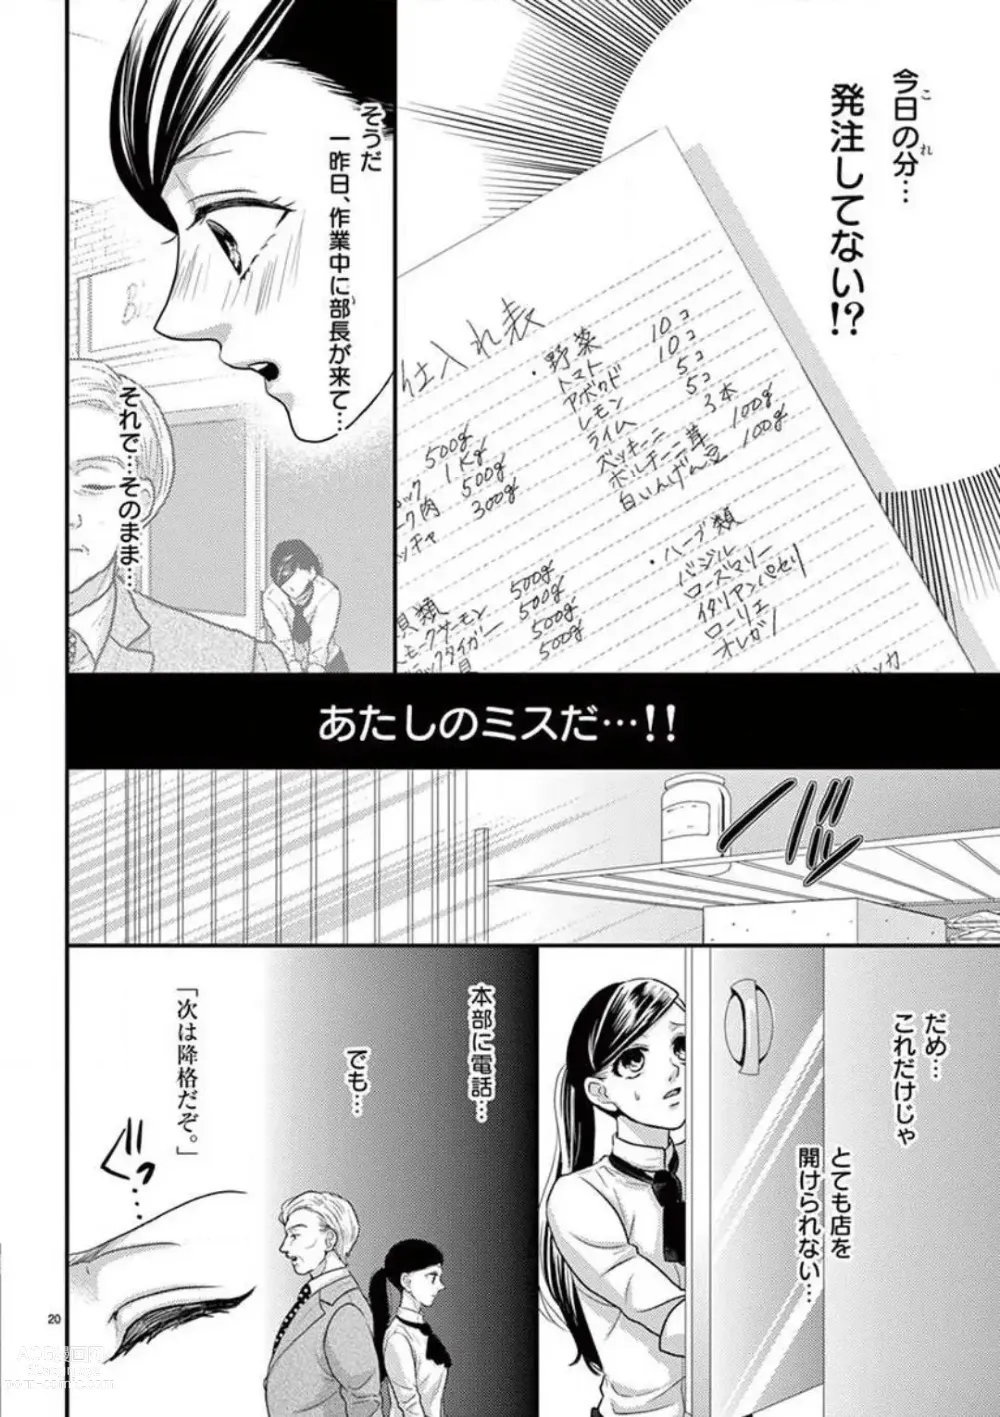 Page 20 of manga Yajū Suitchi ON!〜 Junjō Wanko wa Hageshi Sugi 〜